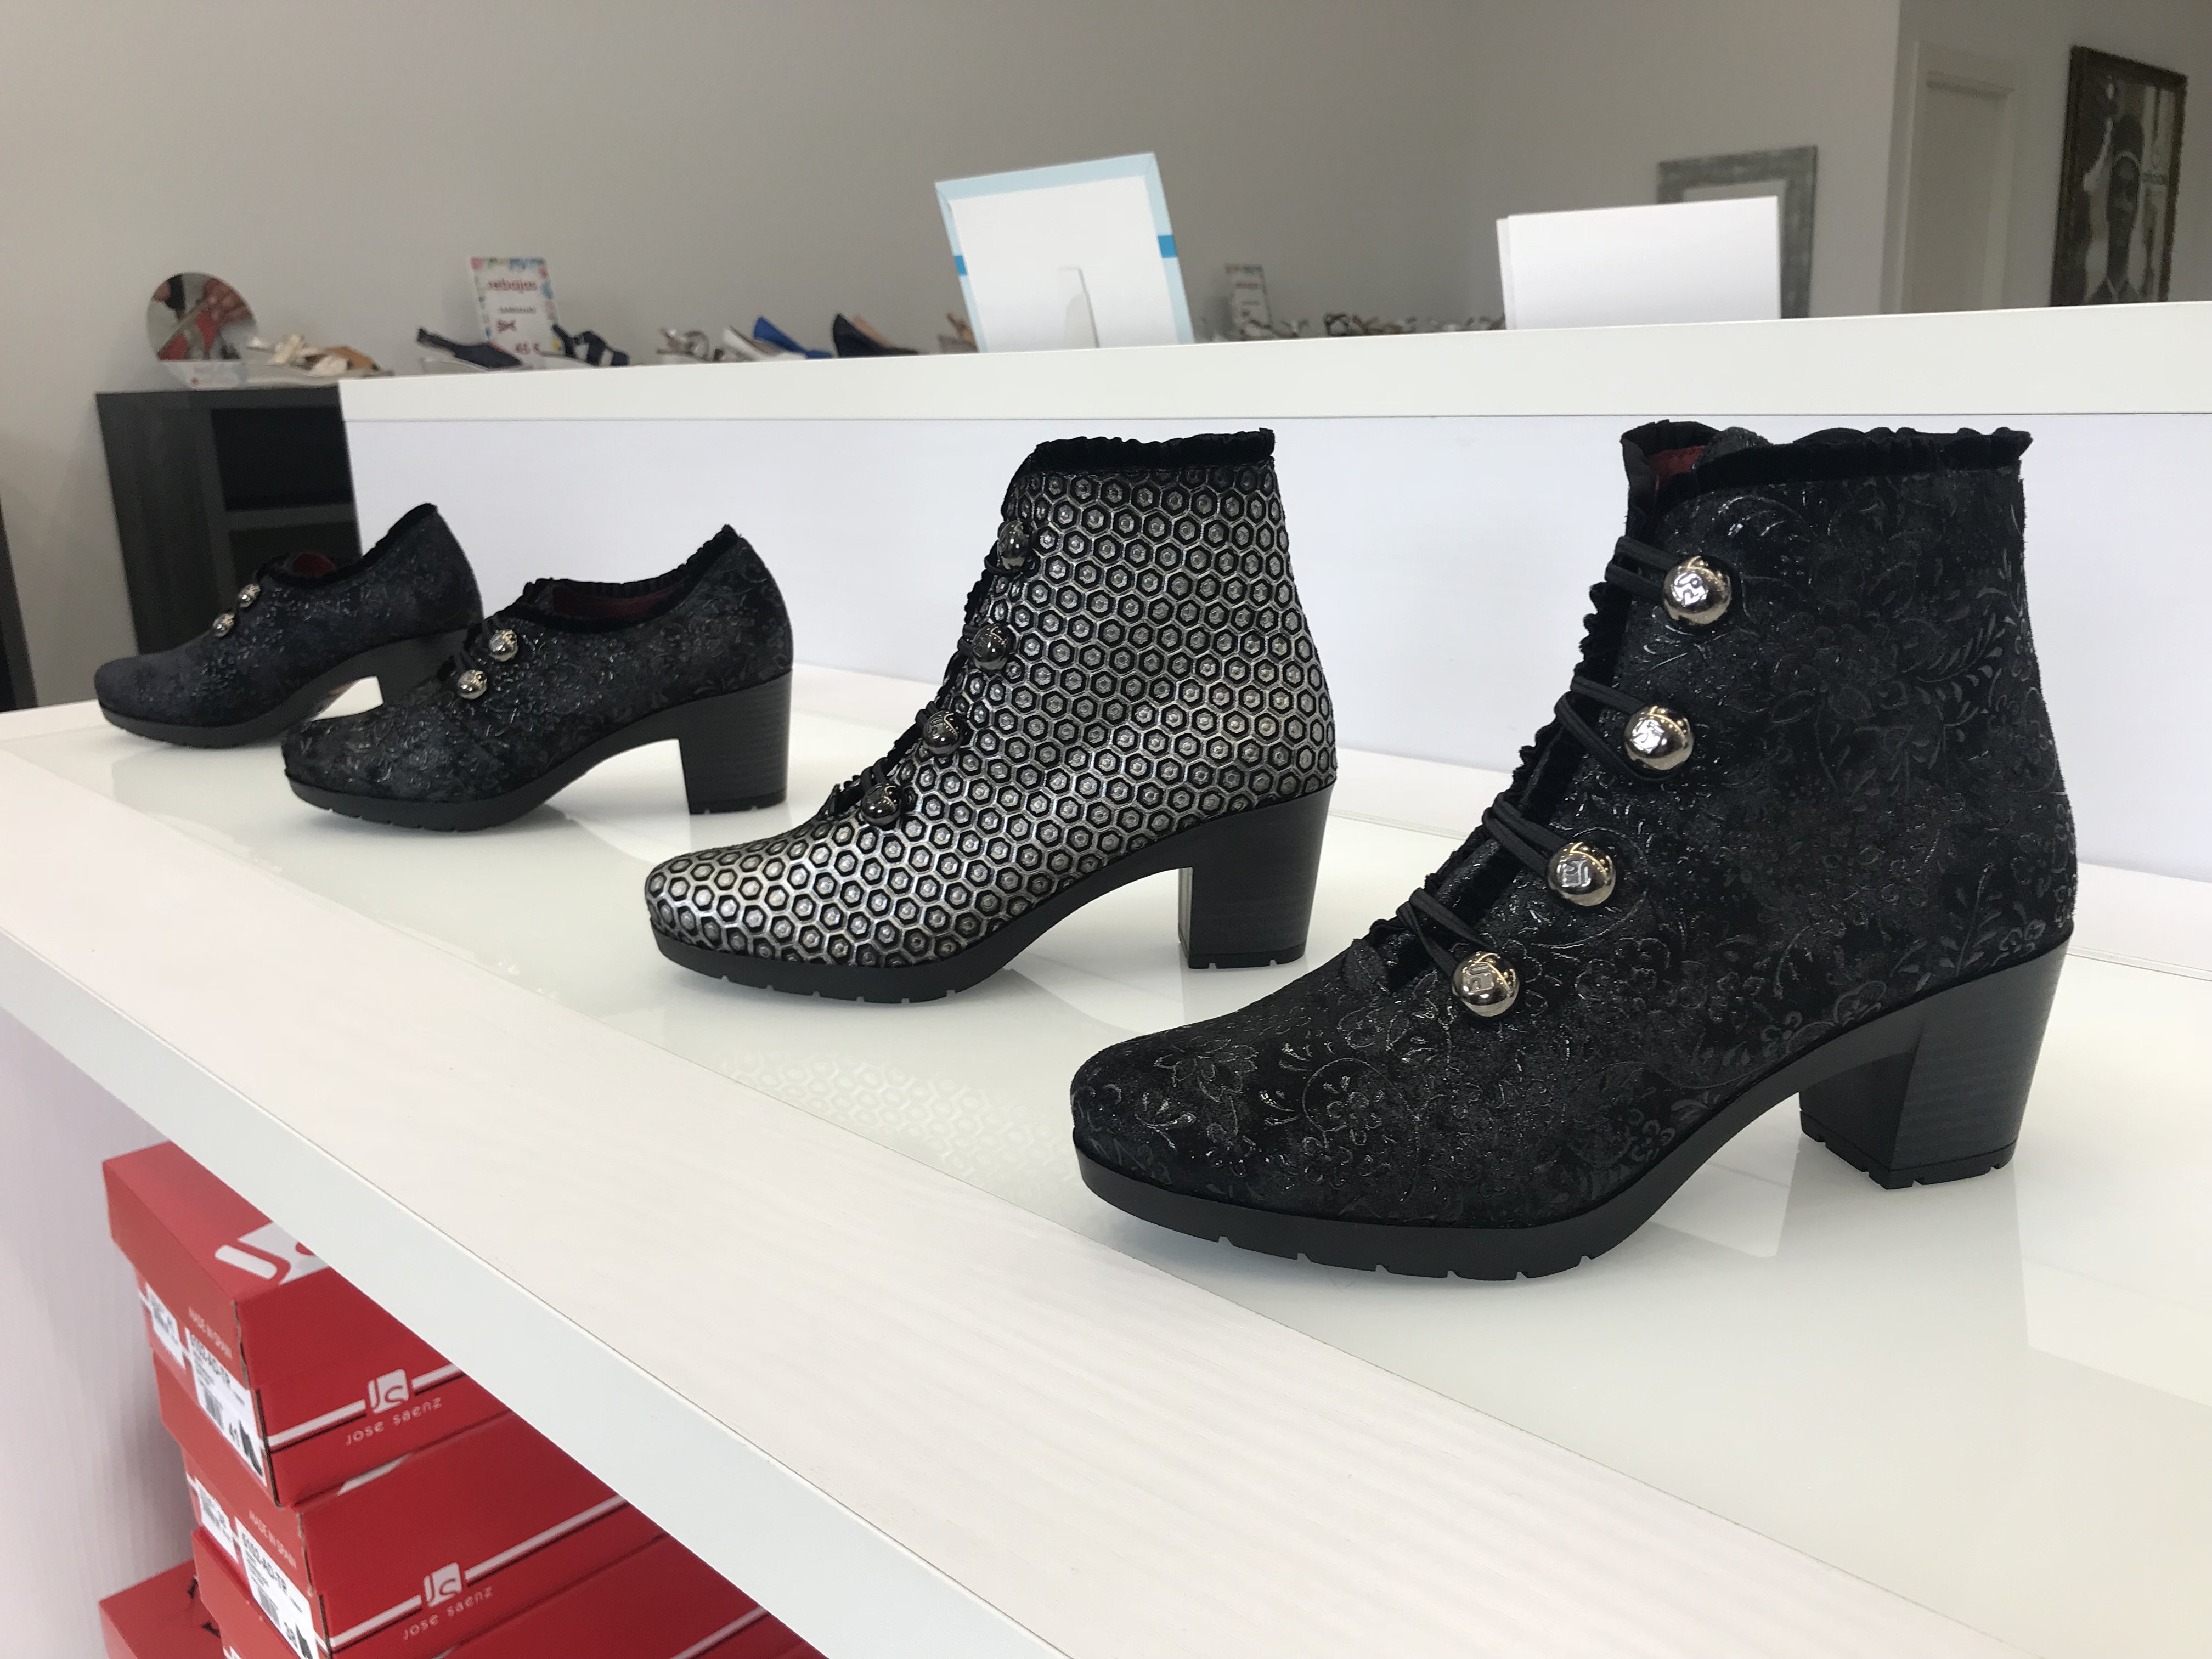 Calzado on Twitter: "Nueva temporada Otoño Invierno 2018 en la tienda oficial @JoseSaenzShoes de Arnedo. Diseño y confort únicos en zapatos, botas y botines de nueva colección, muestras del nº 37